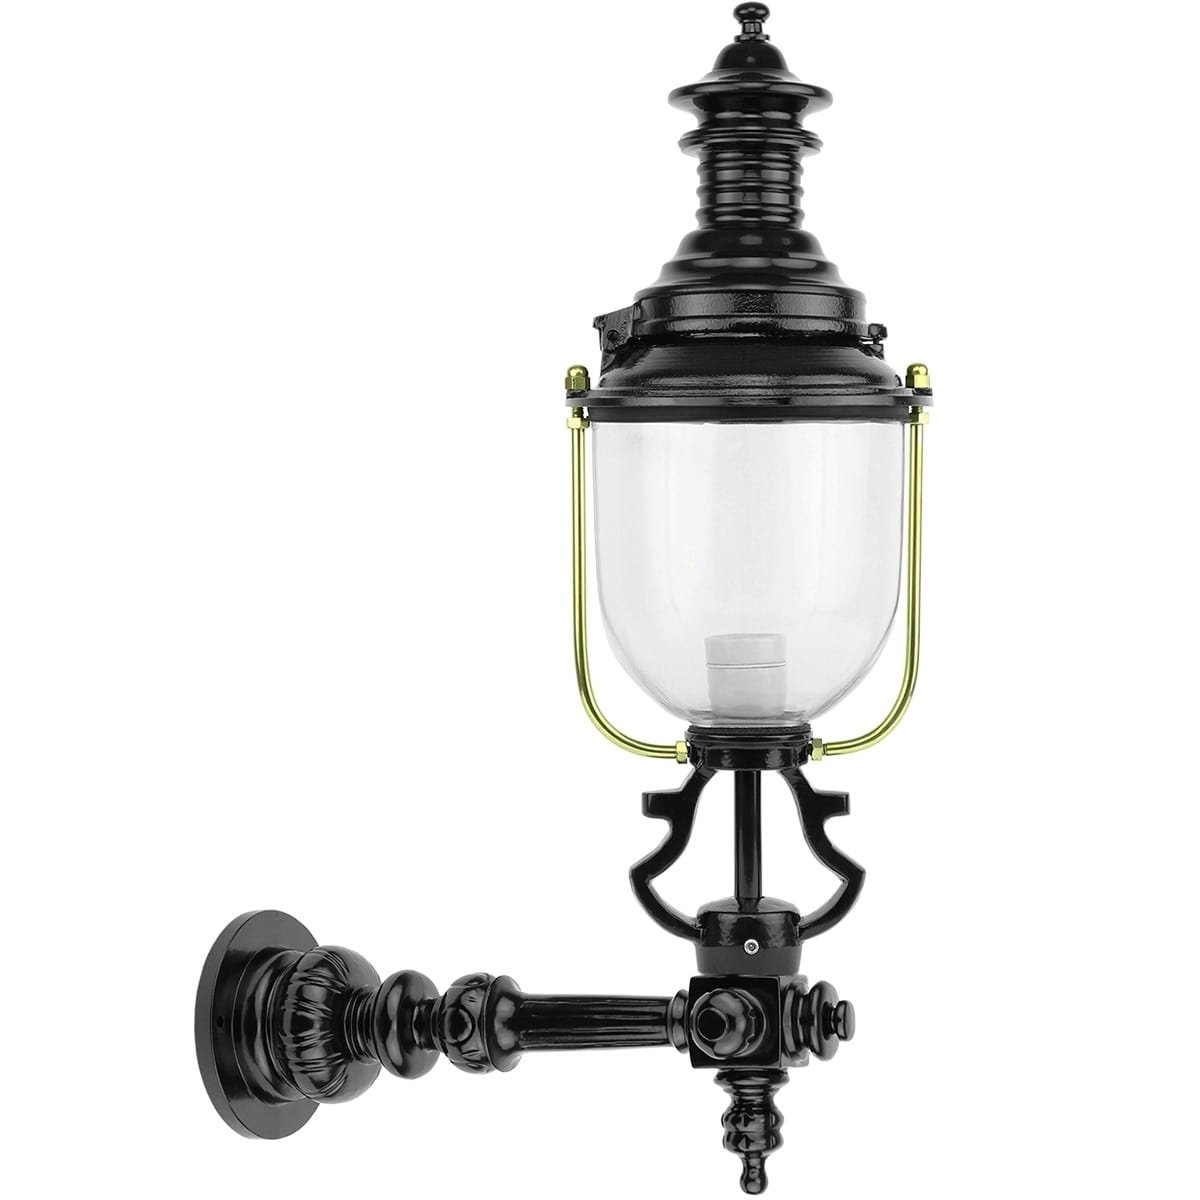 Outdoor Lighting Classic Country Style Lantern front door Goingarijp - 63 cm